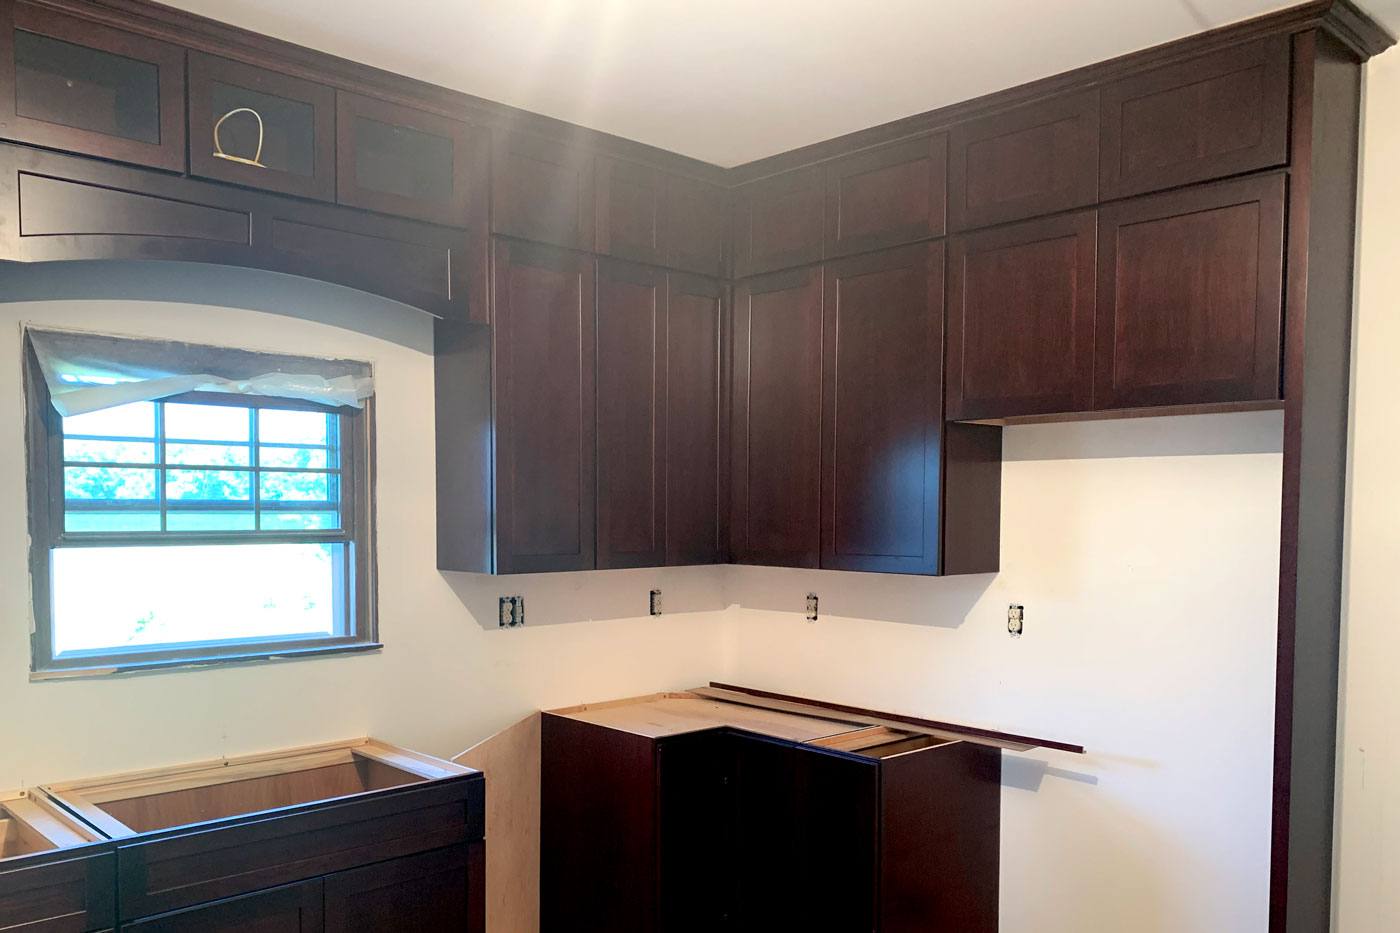 New kdark brown itchen cabinets installed by True Craft Remodelrs in Illinois